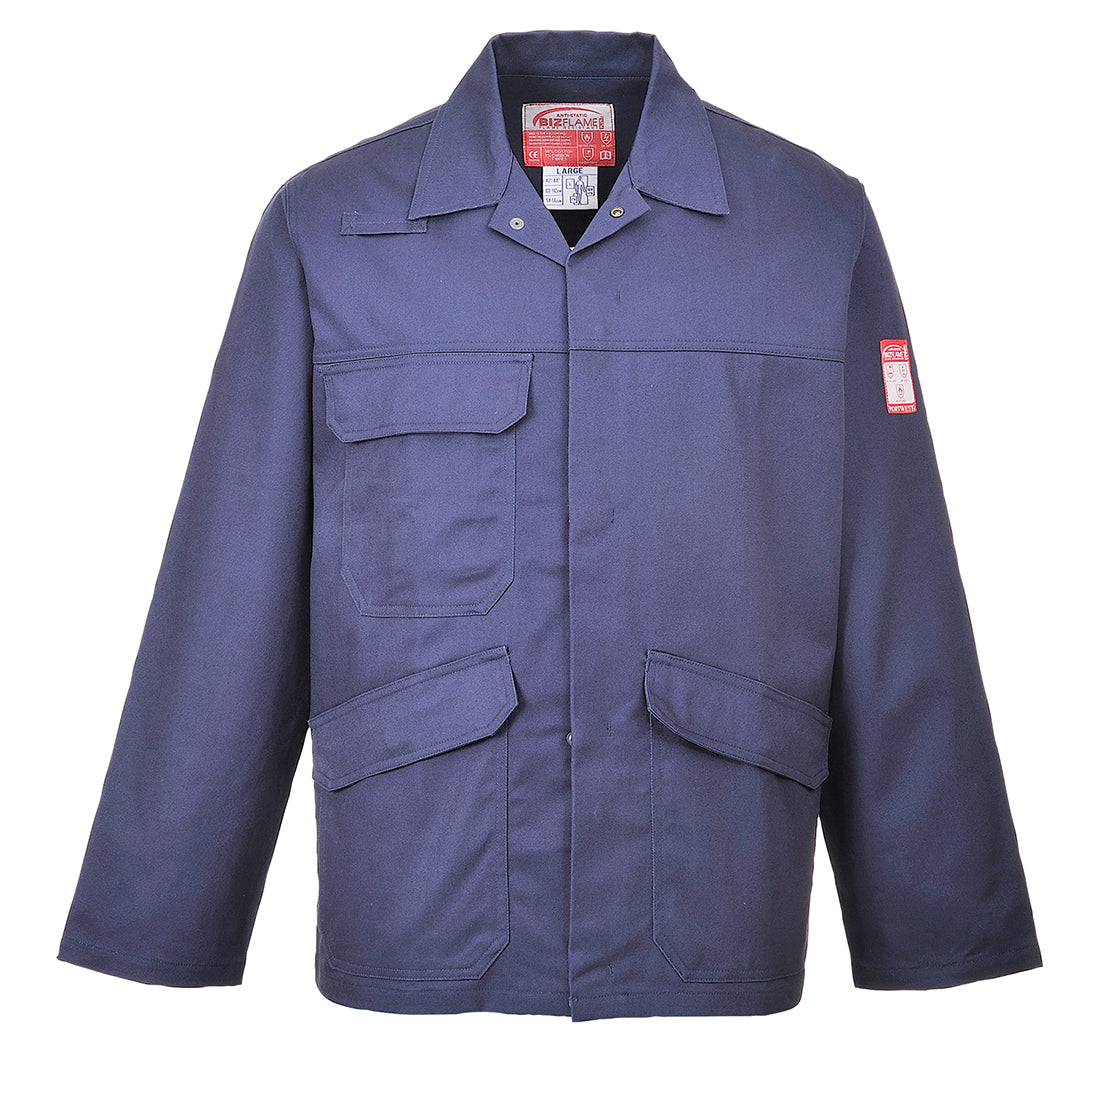 Bizflame Pro Jacket  (FR35)